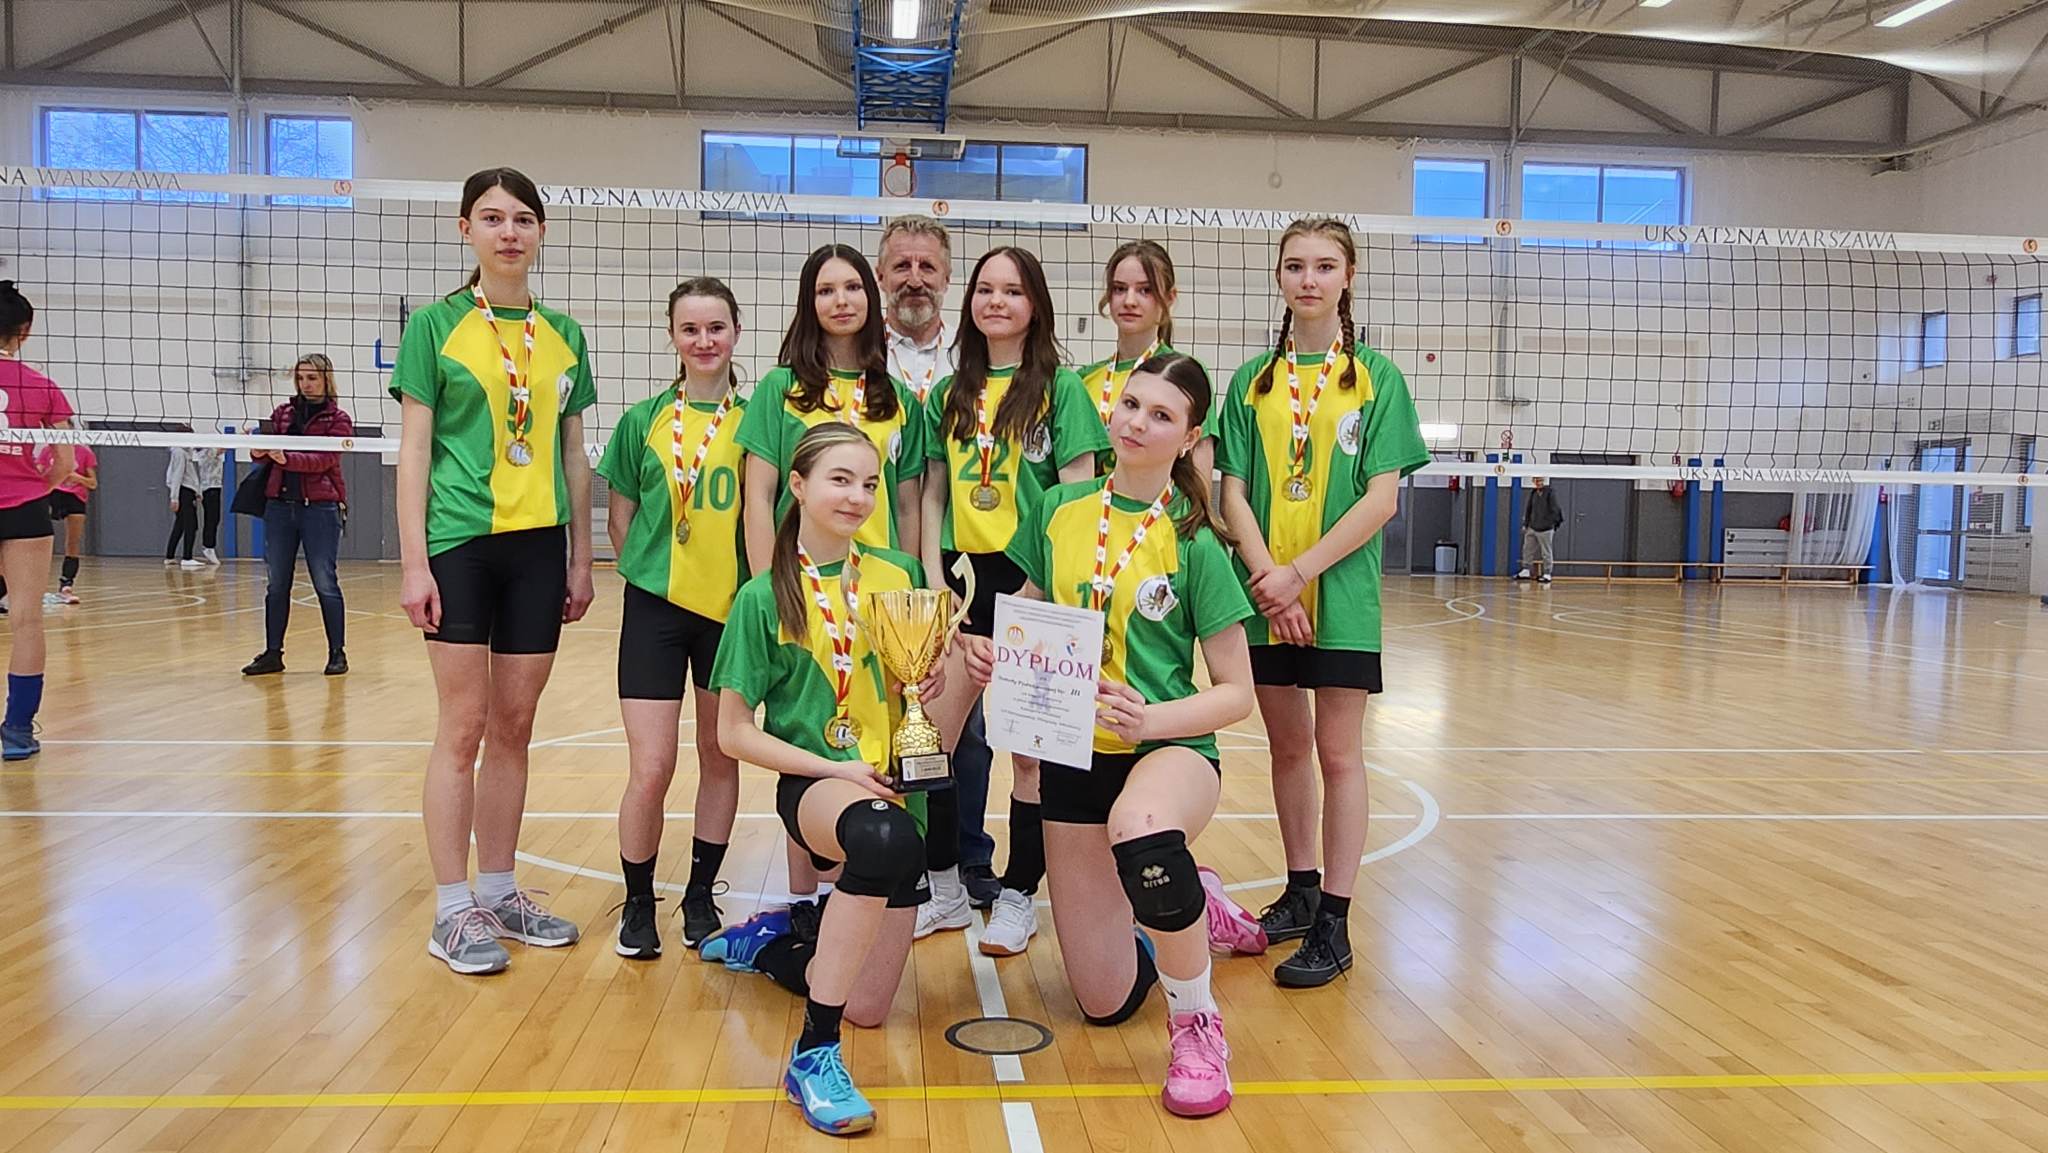 Read more about the article Dziewczyny z klasy sportowej Mistrzyniami Warszawy!